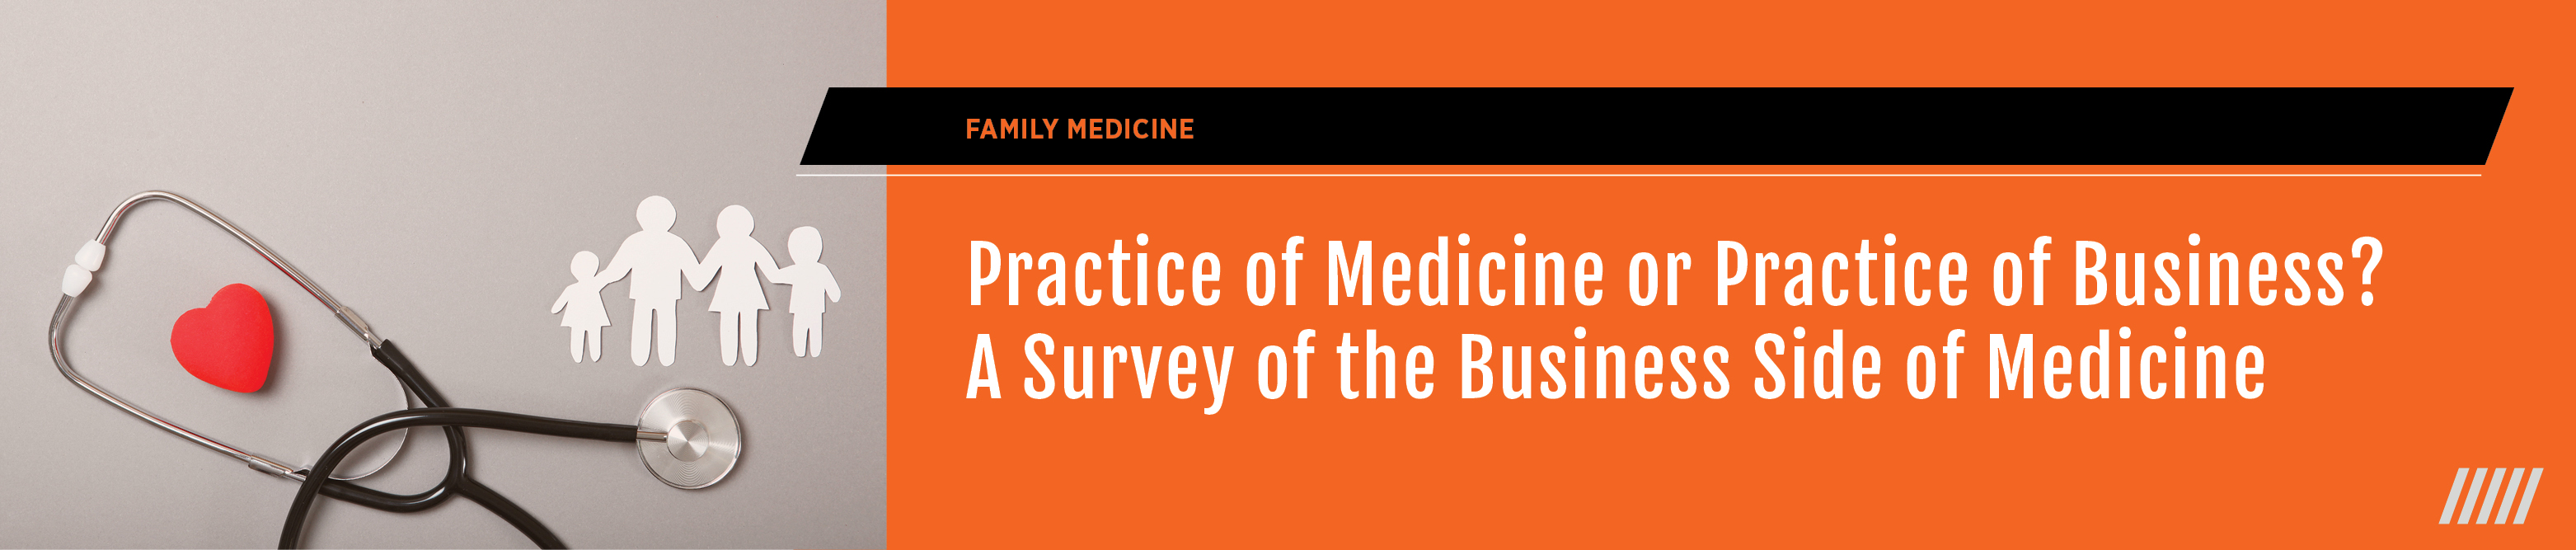 Practice of Medicine or Practice of Business? A Survey of Business Side of Medicine - 2021 Spring Fling Banner